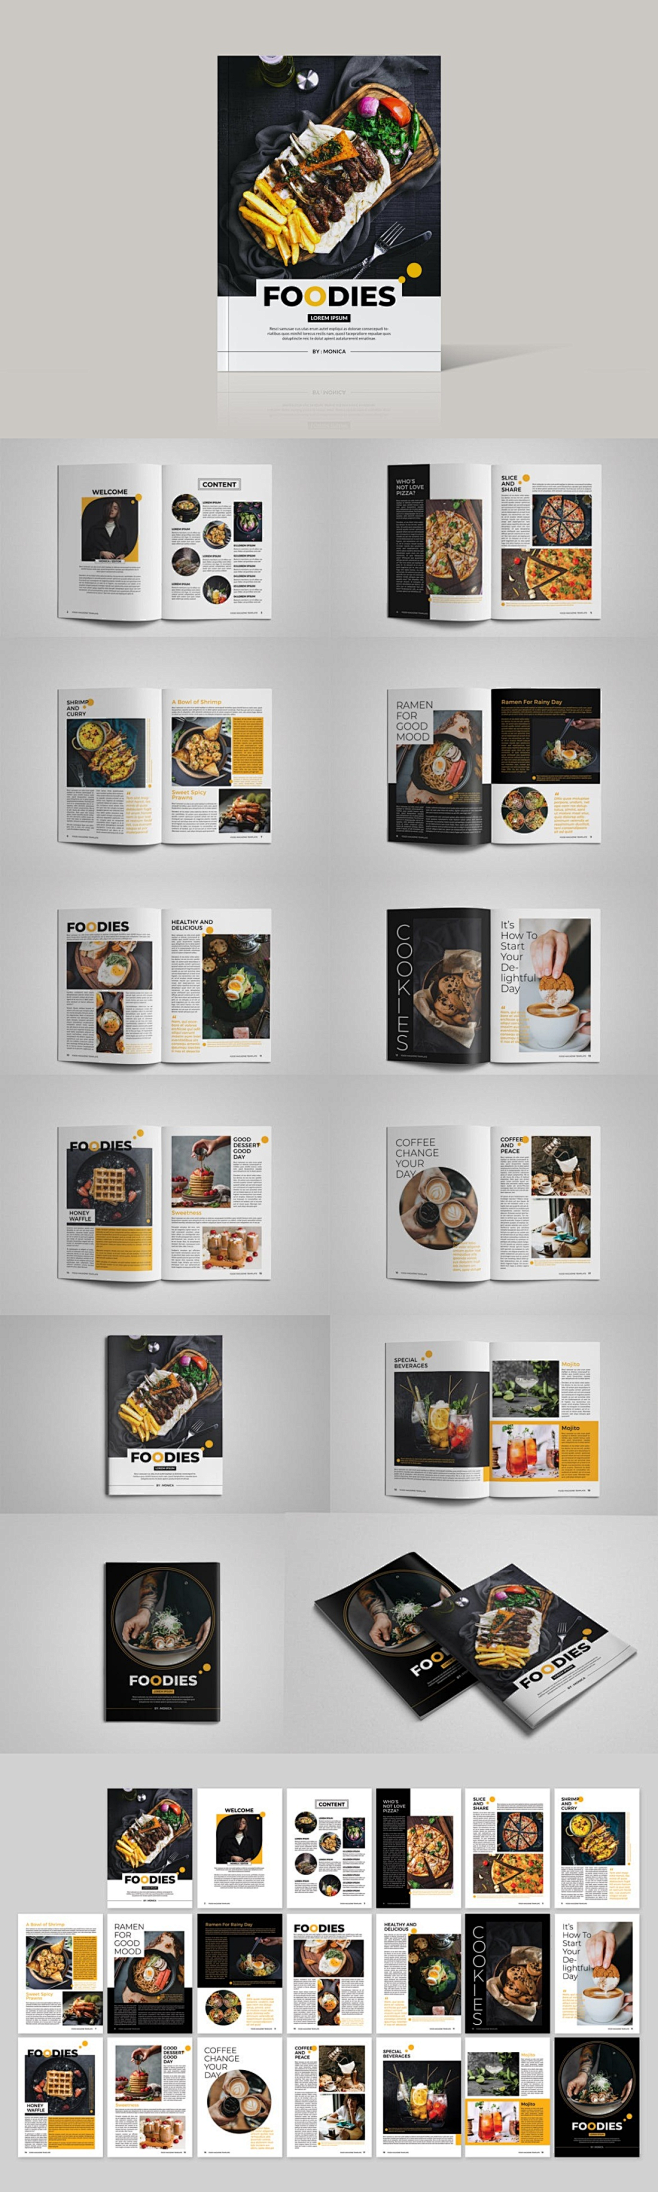 美食家 美食 杂志 模板 设计素材